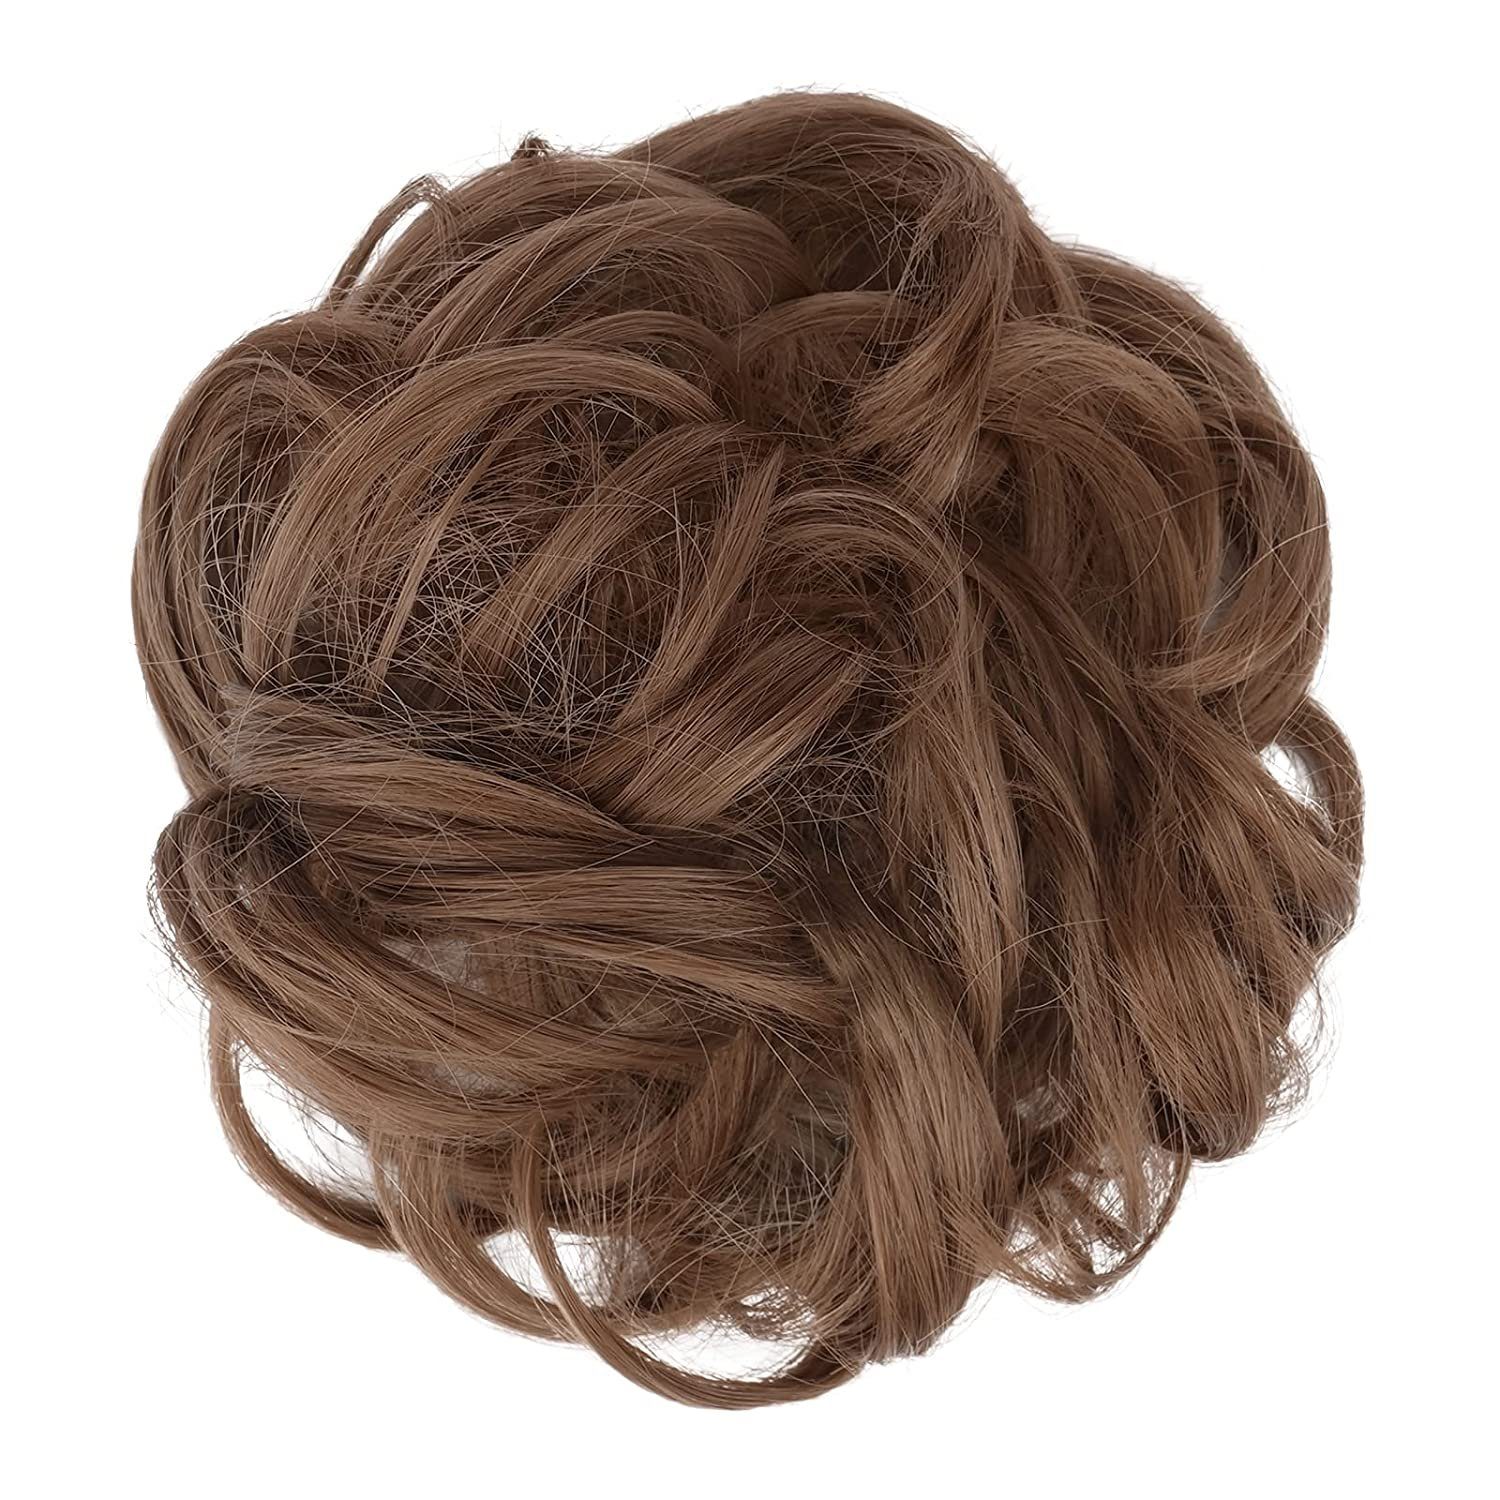 Püke Kunsthaar-Extension Haarteil Haargummi Goldbraun Frauen Hochsteckfrisuren, Helles 35g, für